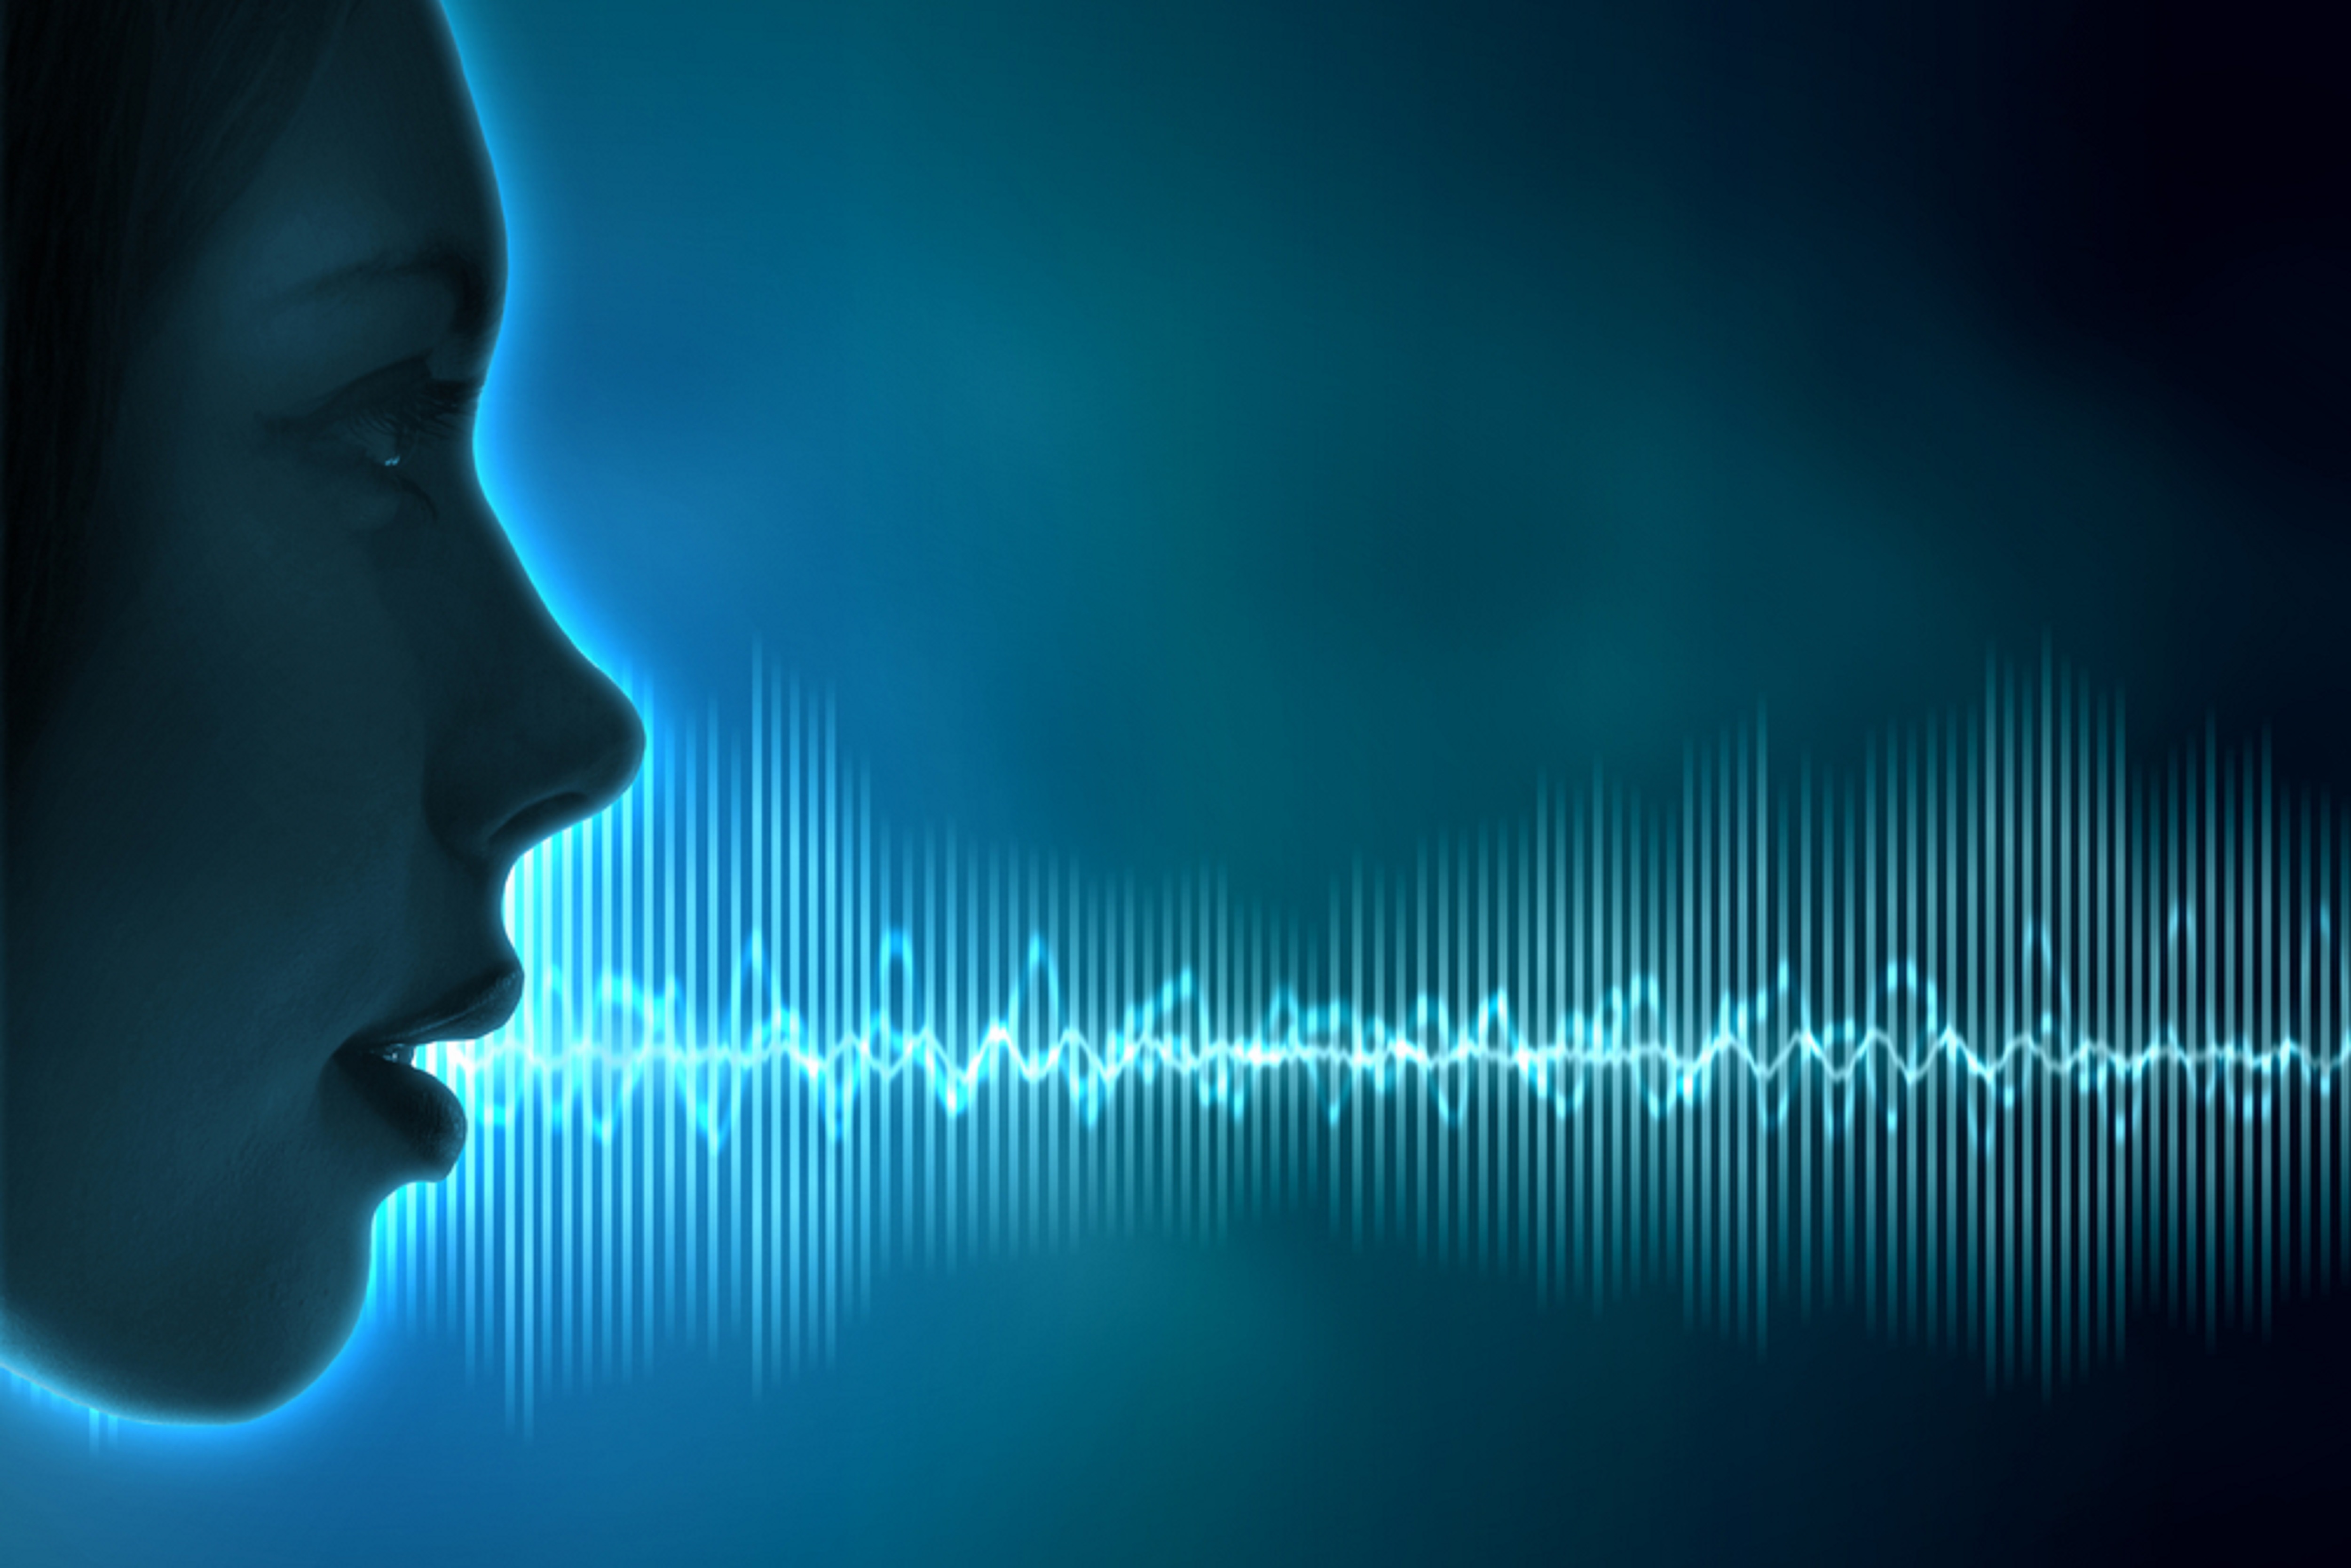 Картинка голосовое. Голос человека. Звуковая волна. Распознавание речи. Голосовая биометрия.